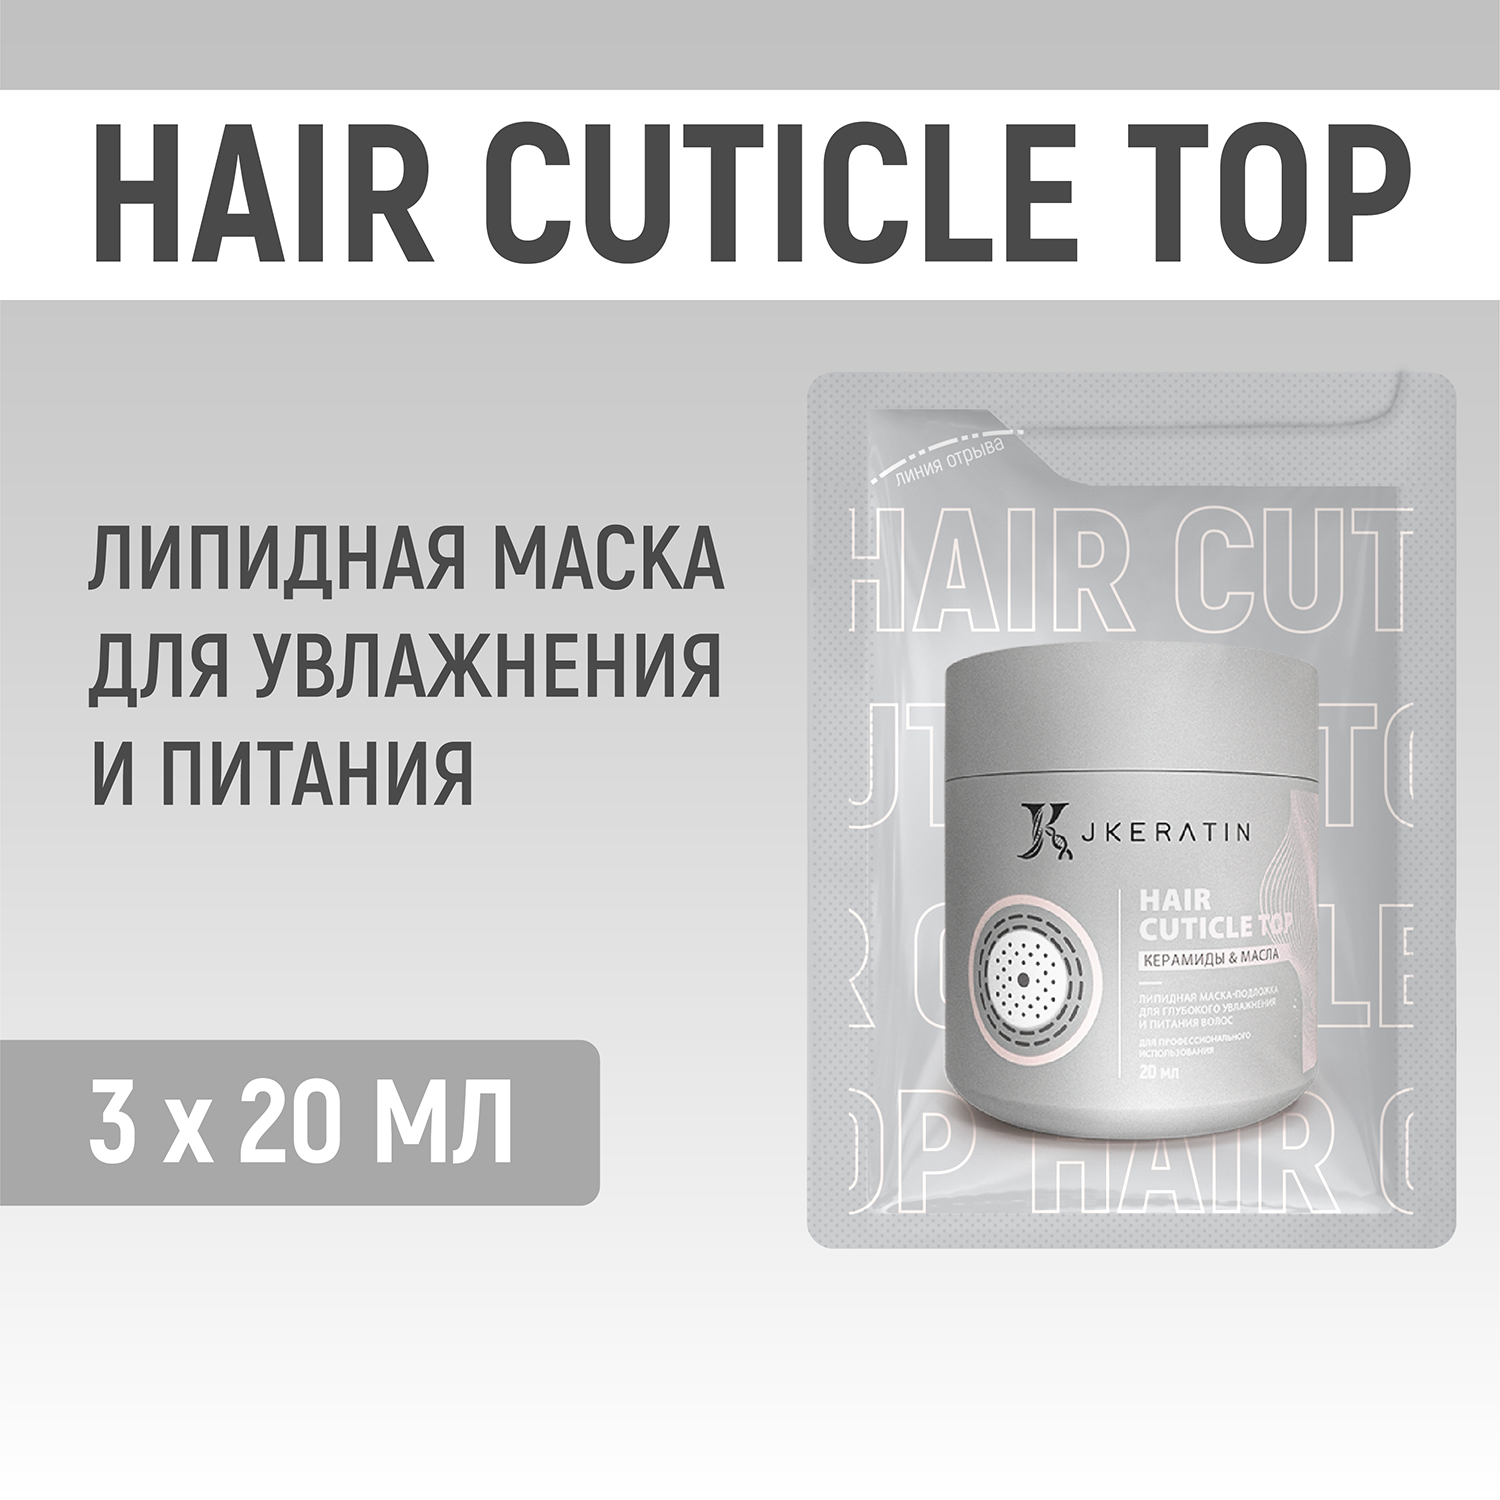 Hair Cuticle Top JKeratin Липидная маска для глубокого увлажнения и питания волос 3х20 мл